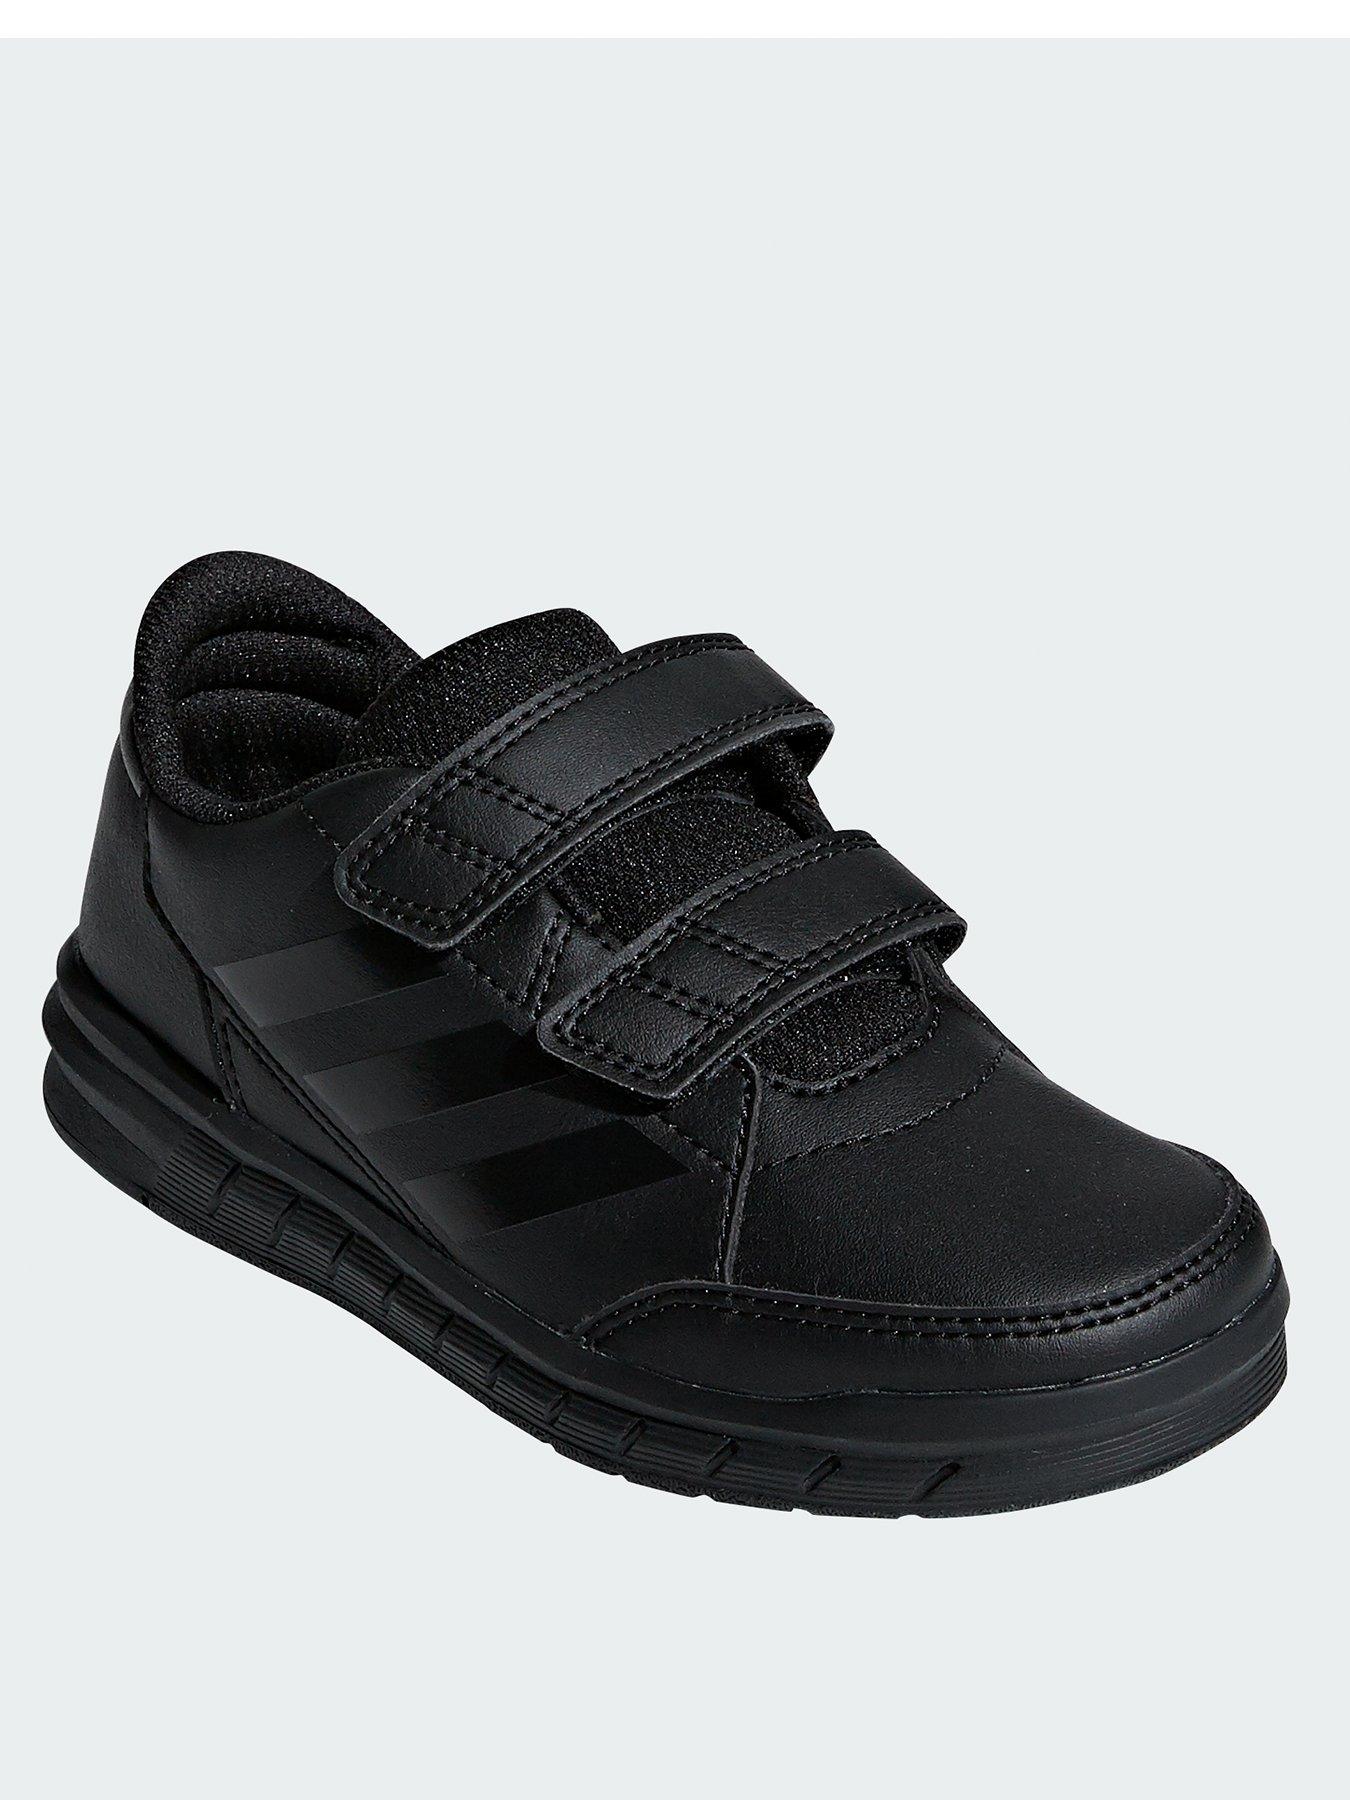 adidas junior black trainers